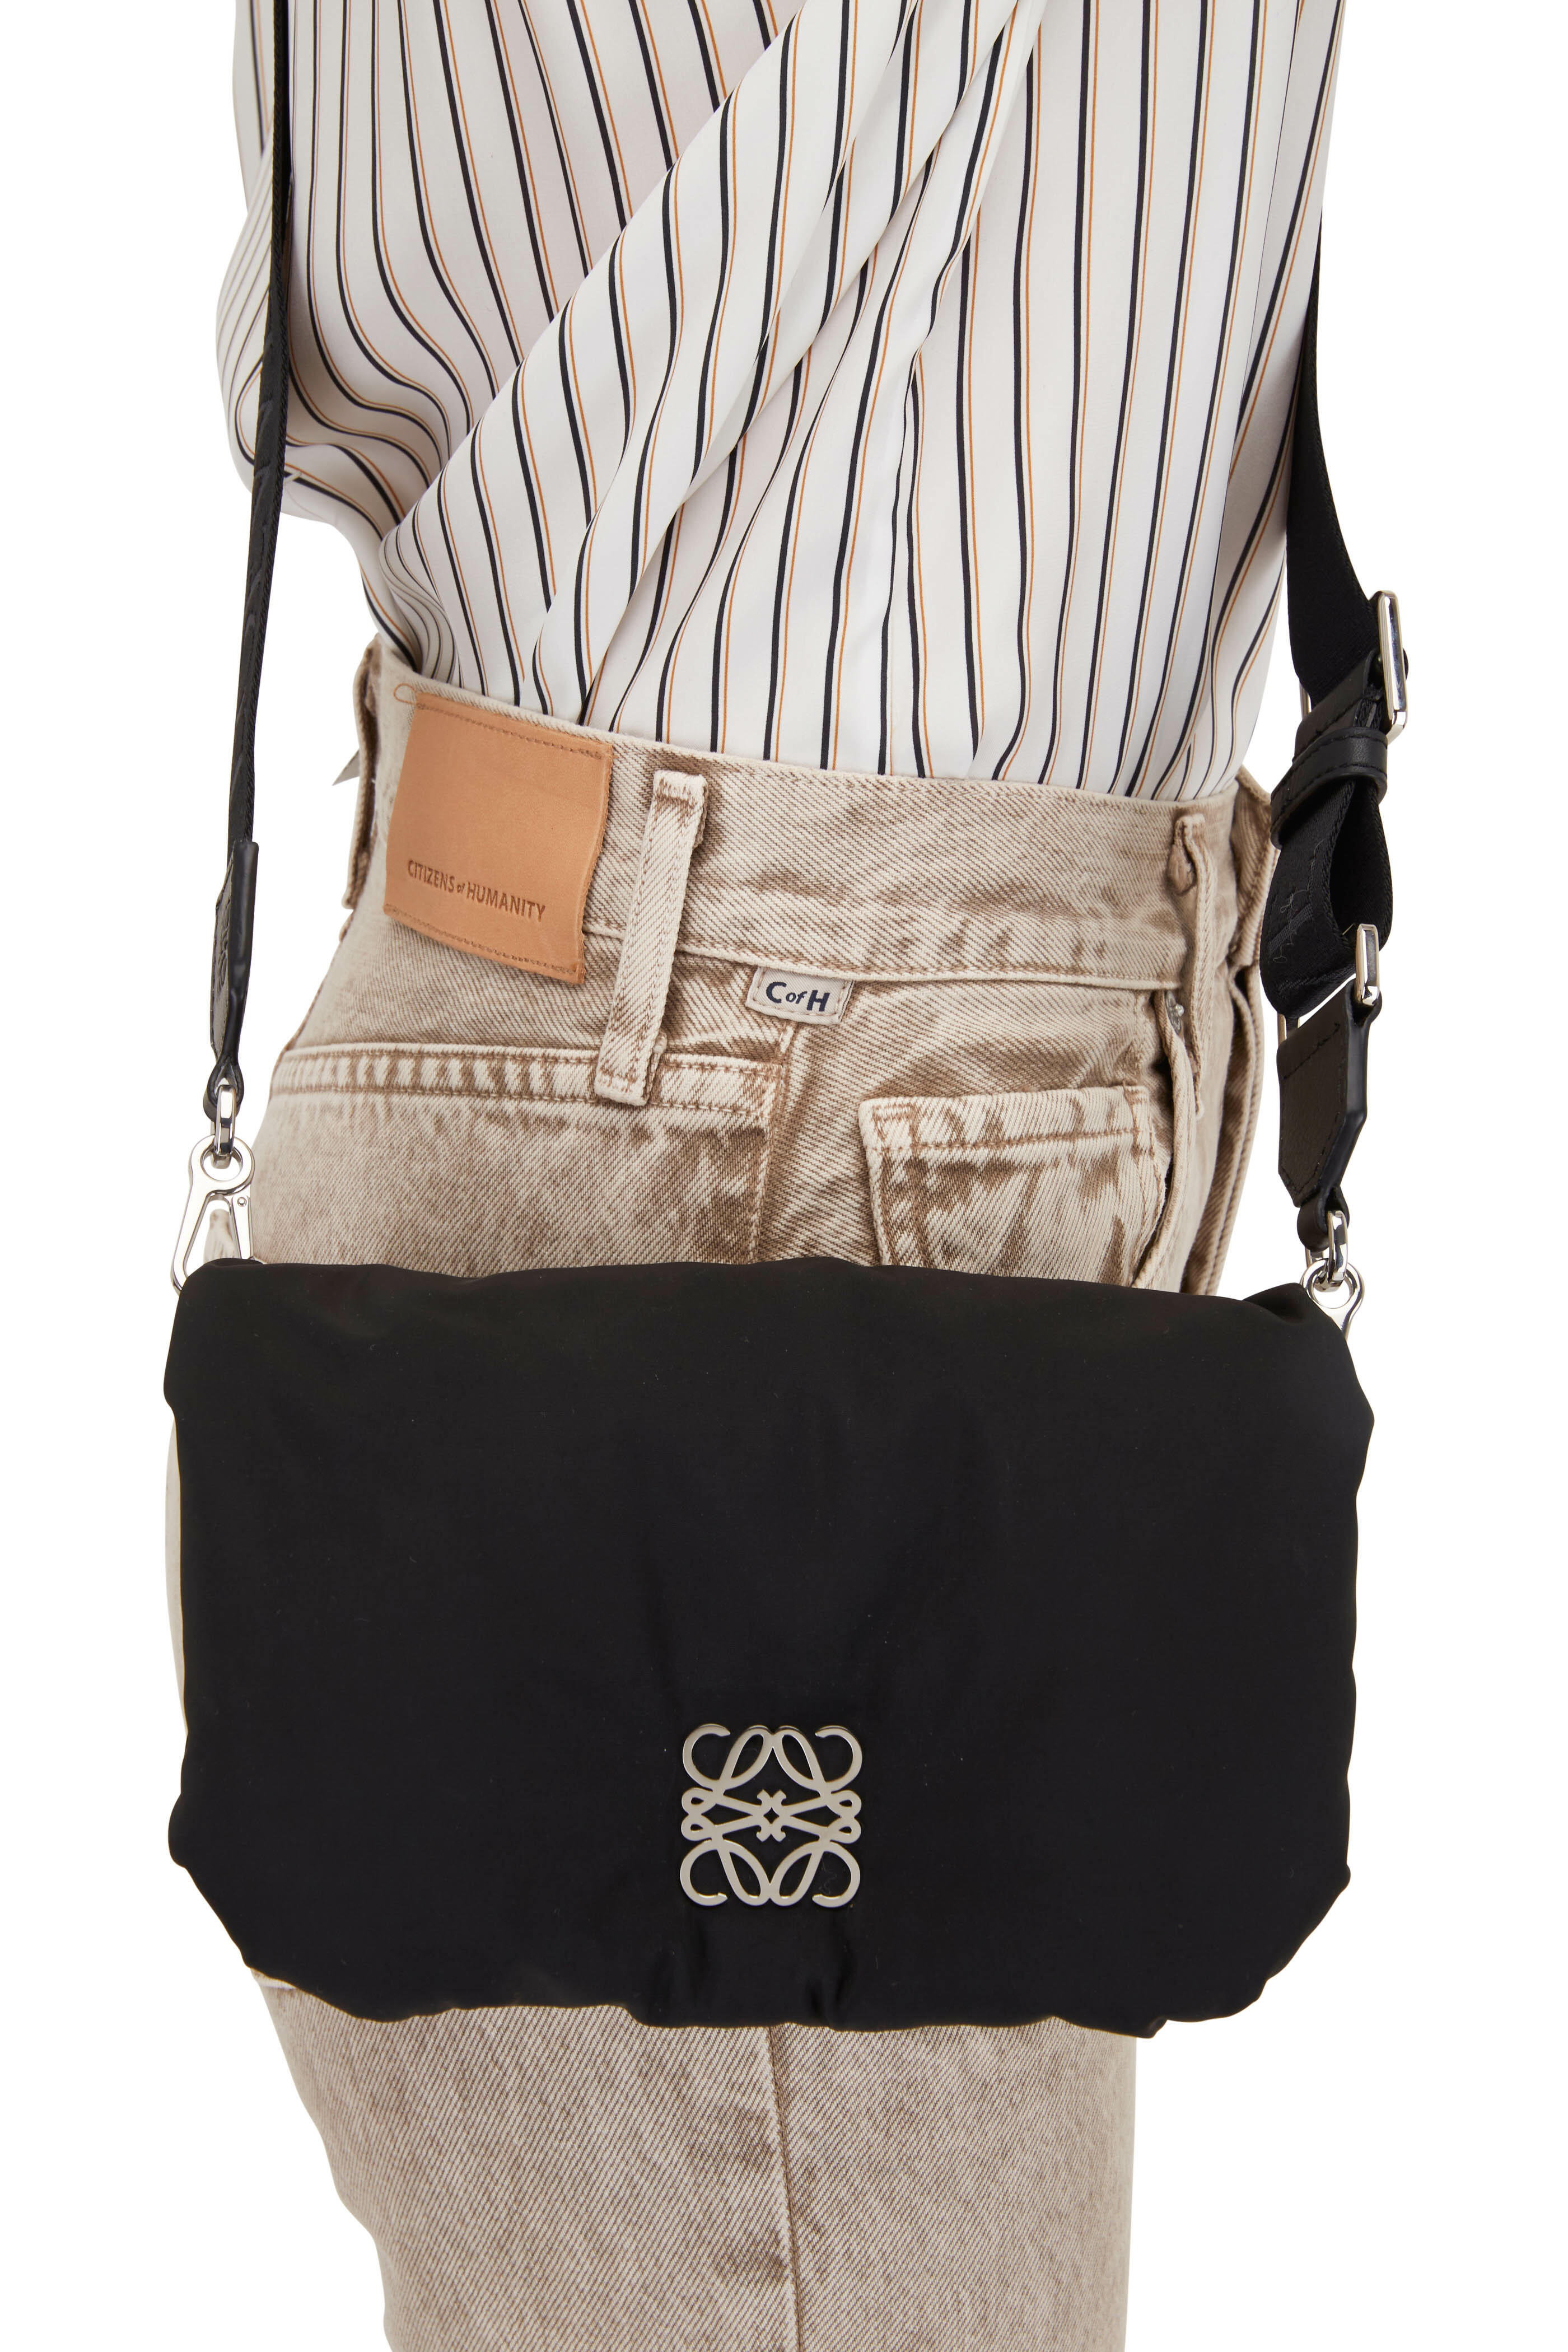 Loewe - Goya Black Nylon Mini Puffer Bag